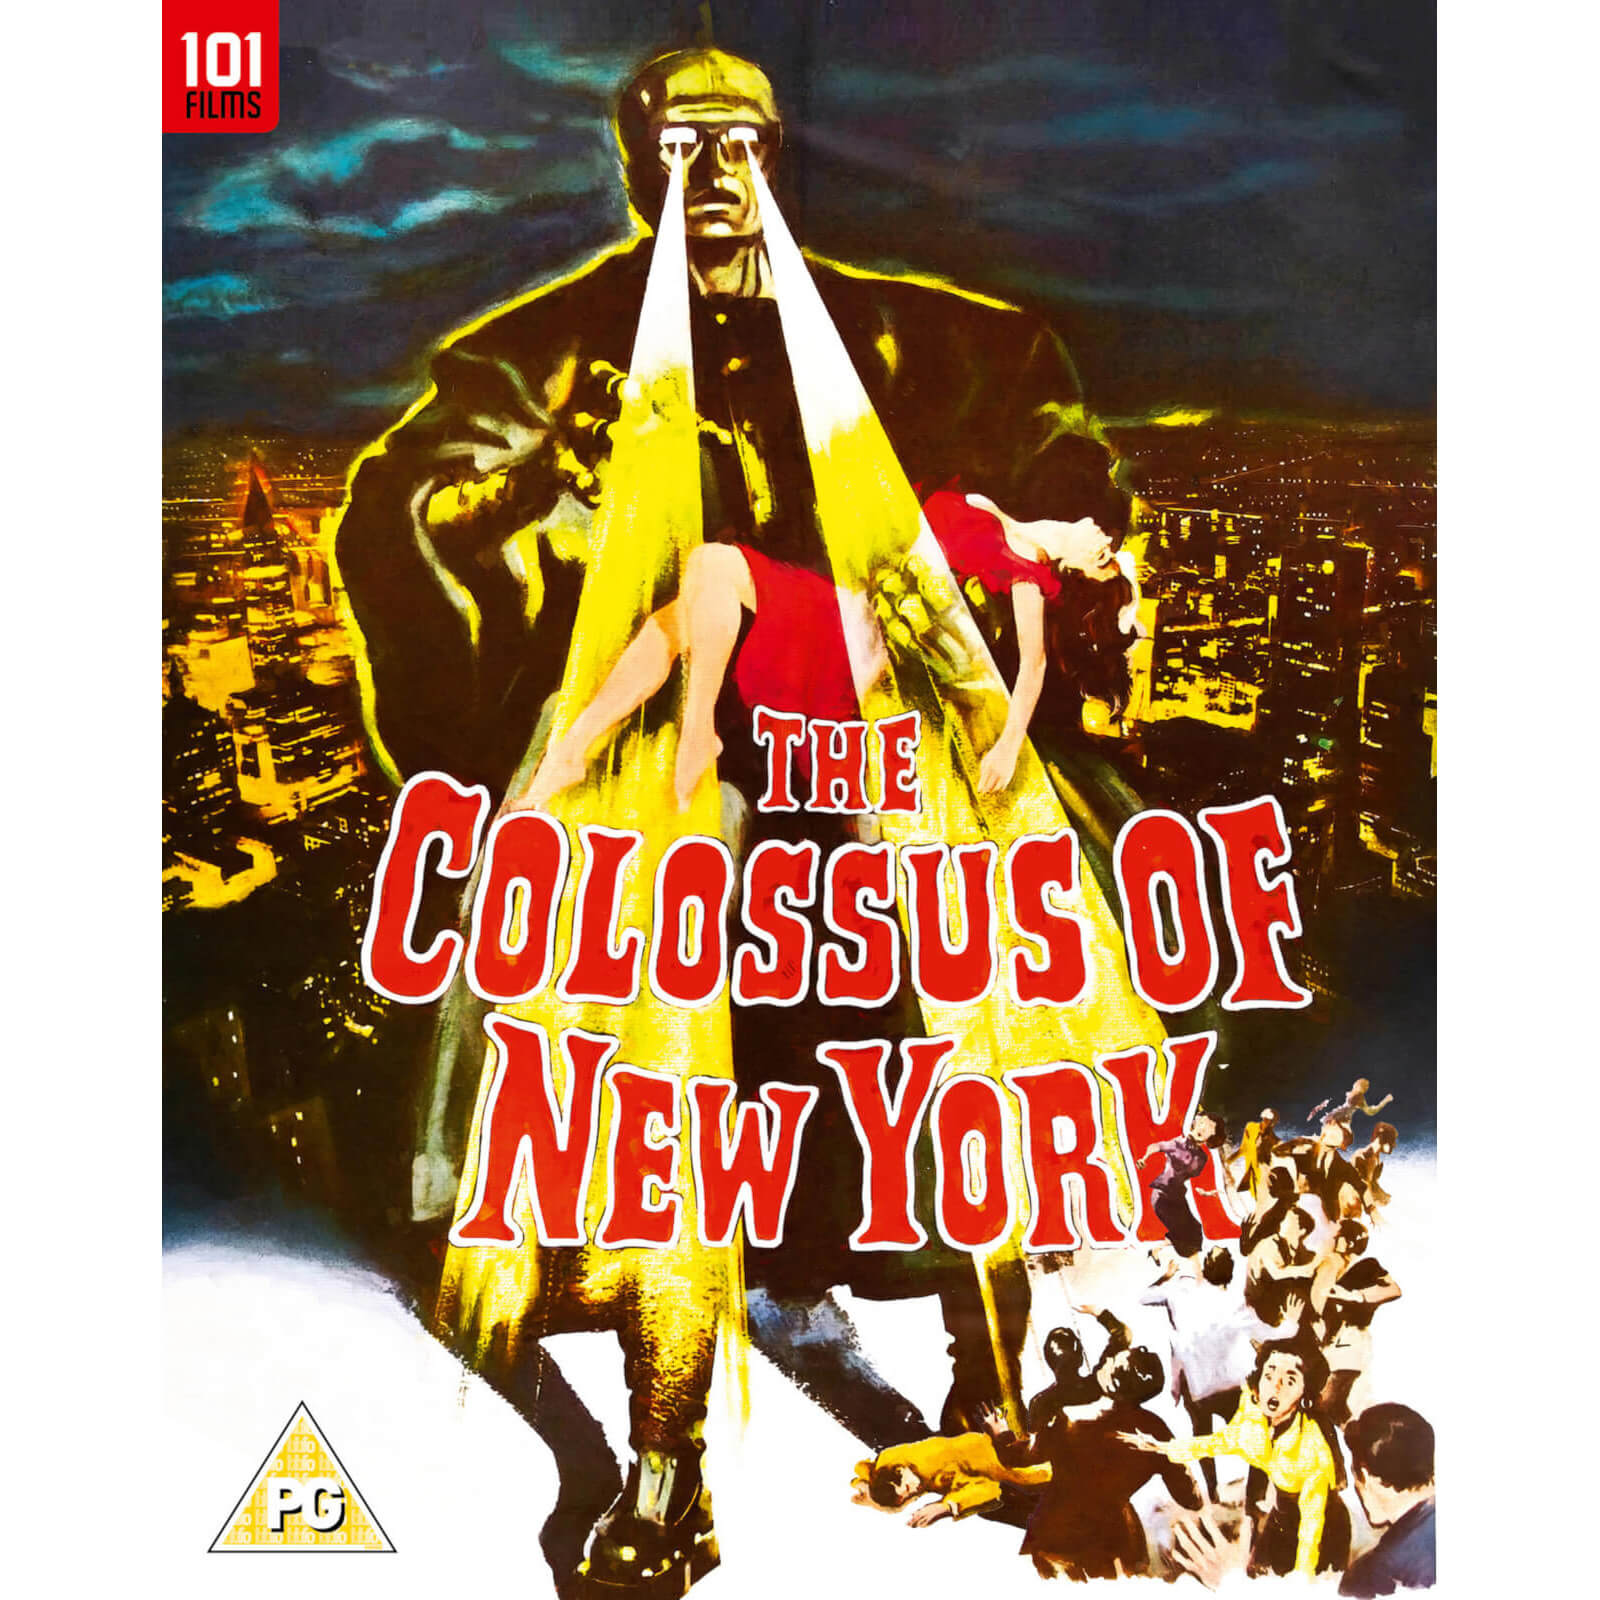 Der Koloss von New York